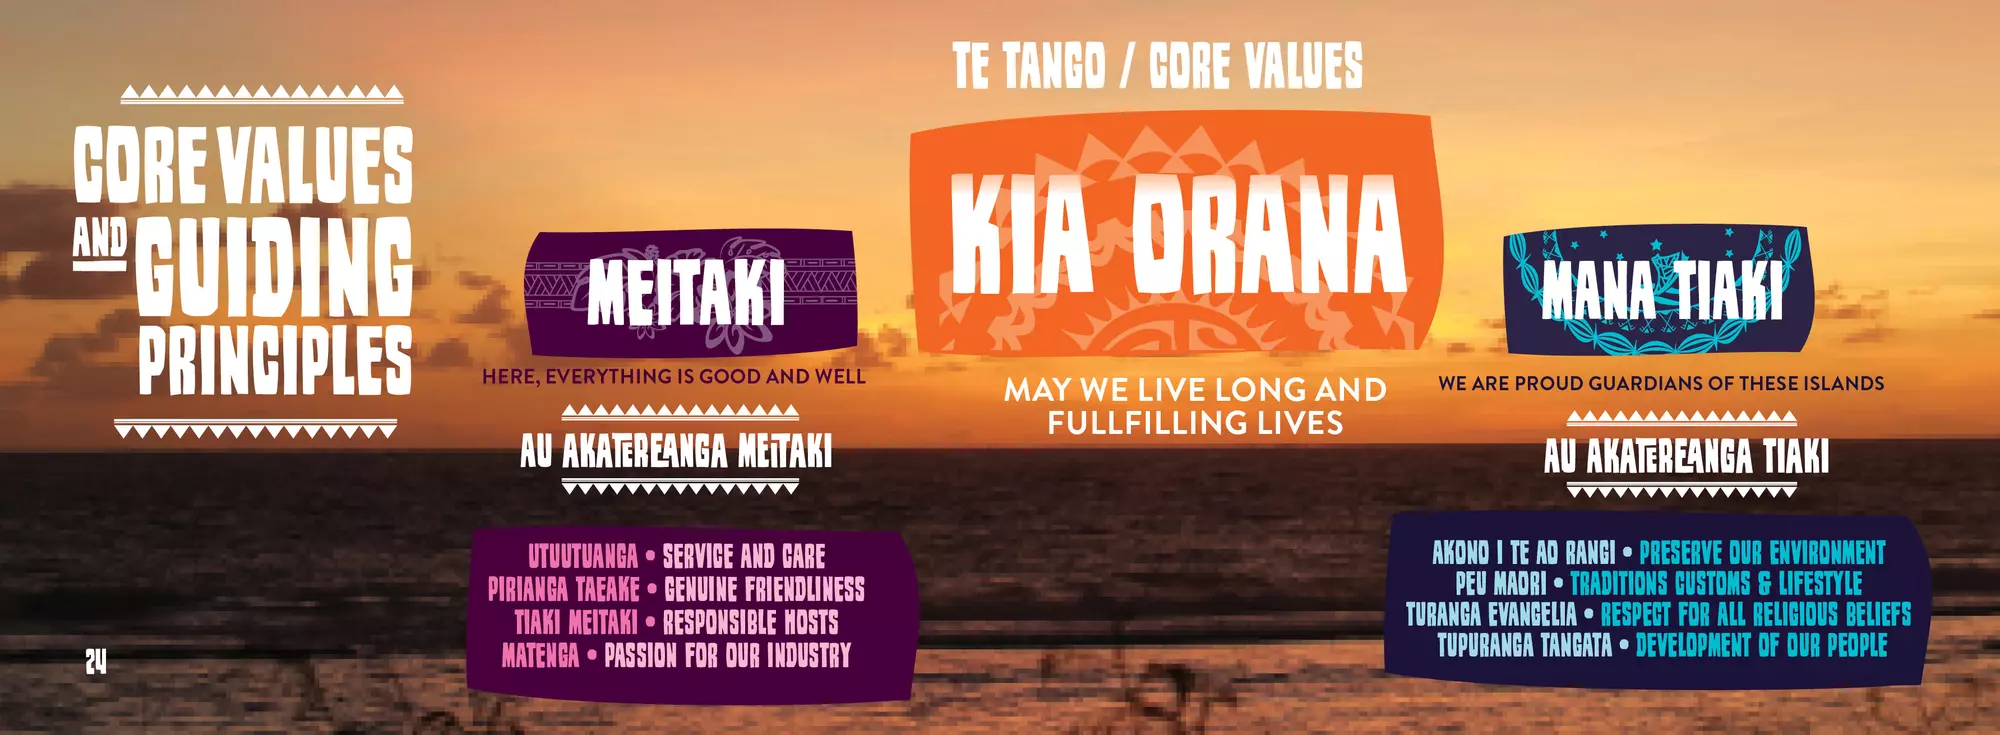 Kia Orana Values